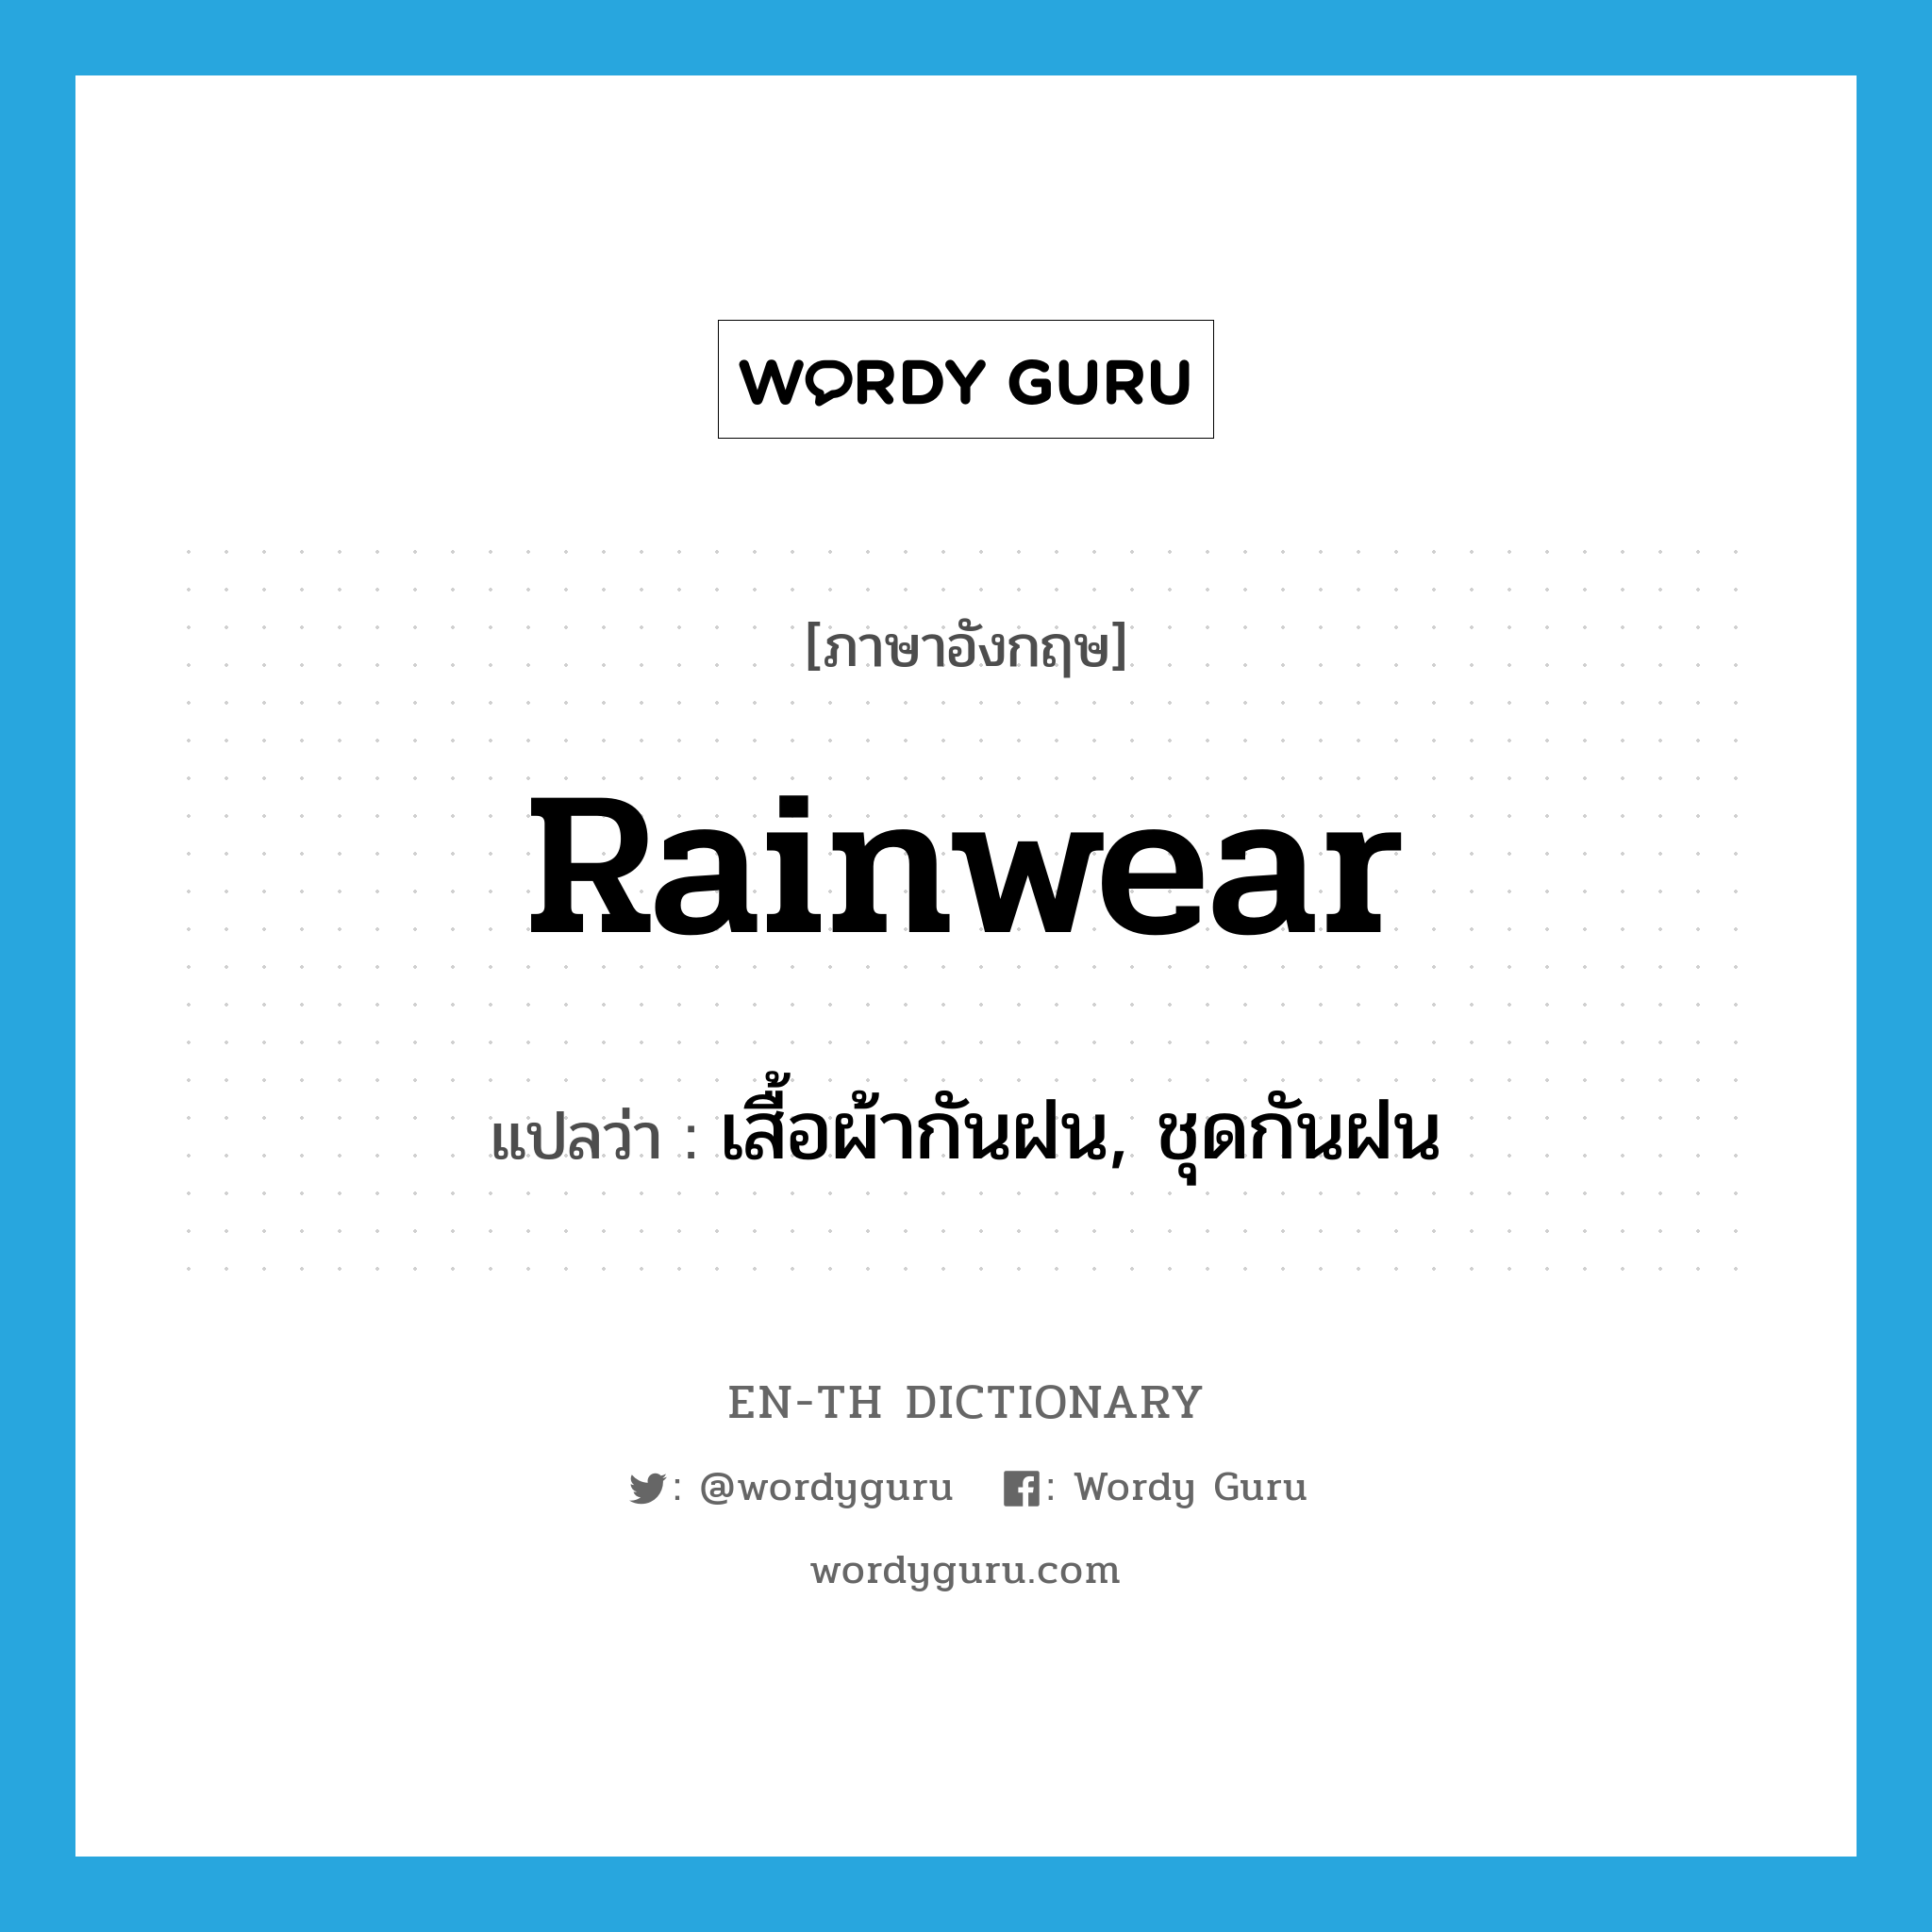 เสื้อผ้ากันฝน, ชุดกันฝน ภาษาอังกฤษ?, คำศัพท์ภาษาอังกฤษ เสื้อผ้ากันฝน, ชุดกันฝน แปลว่า rainwear ประเภท N หมวด N